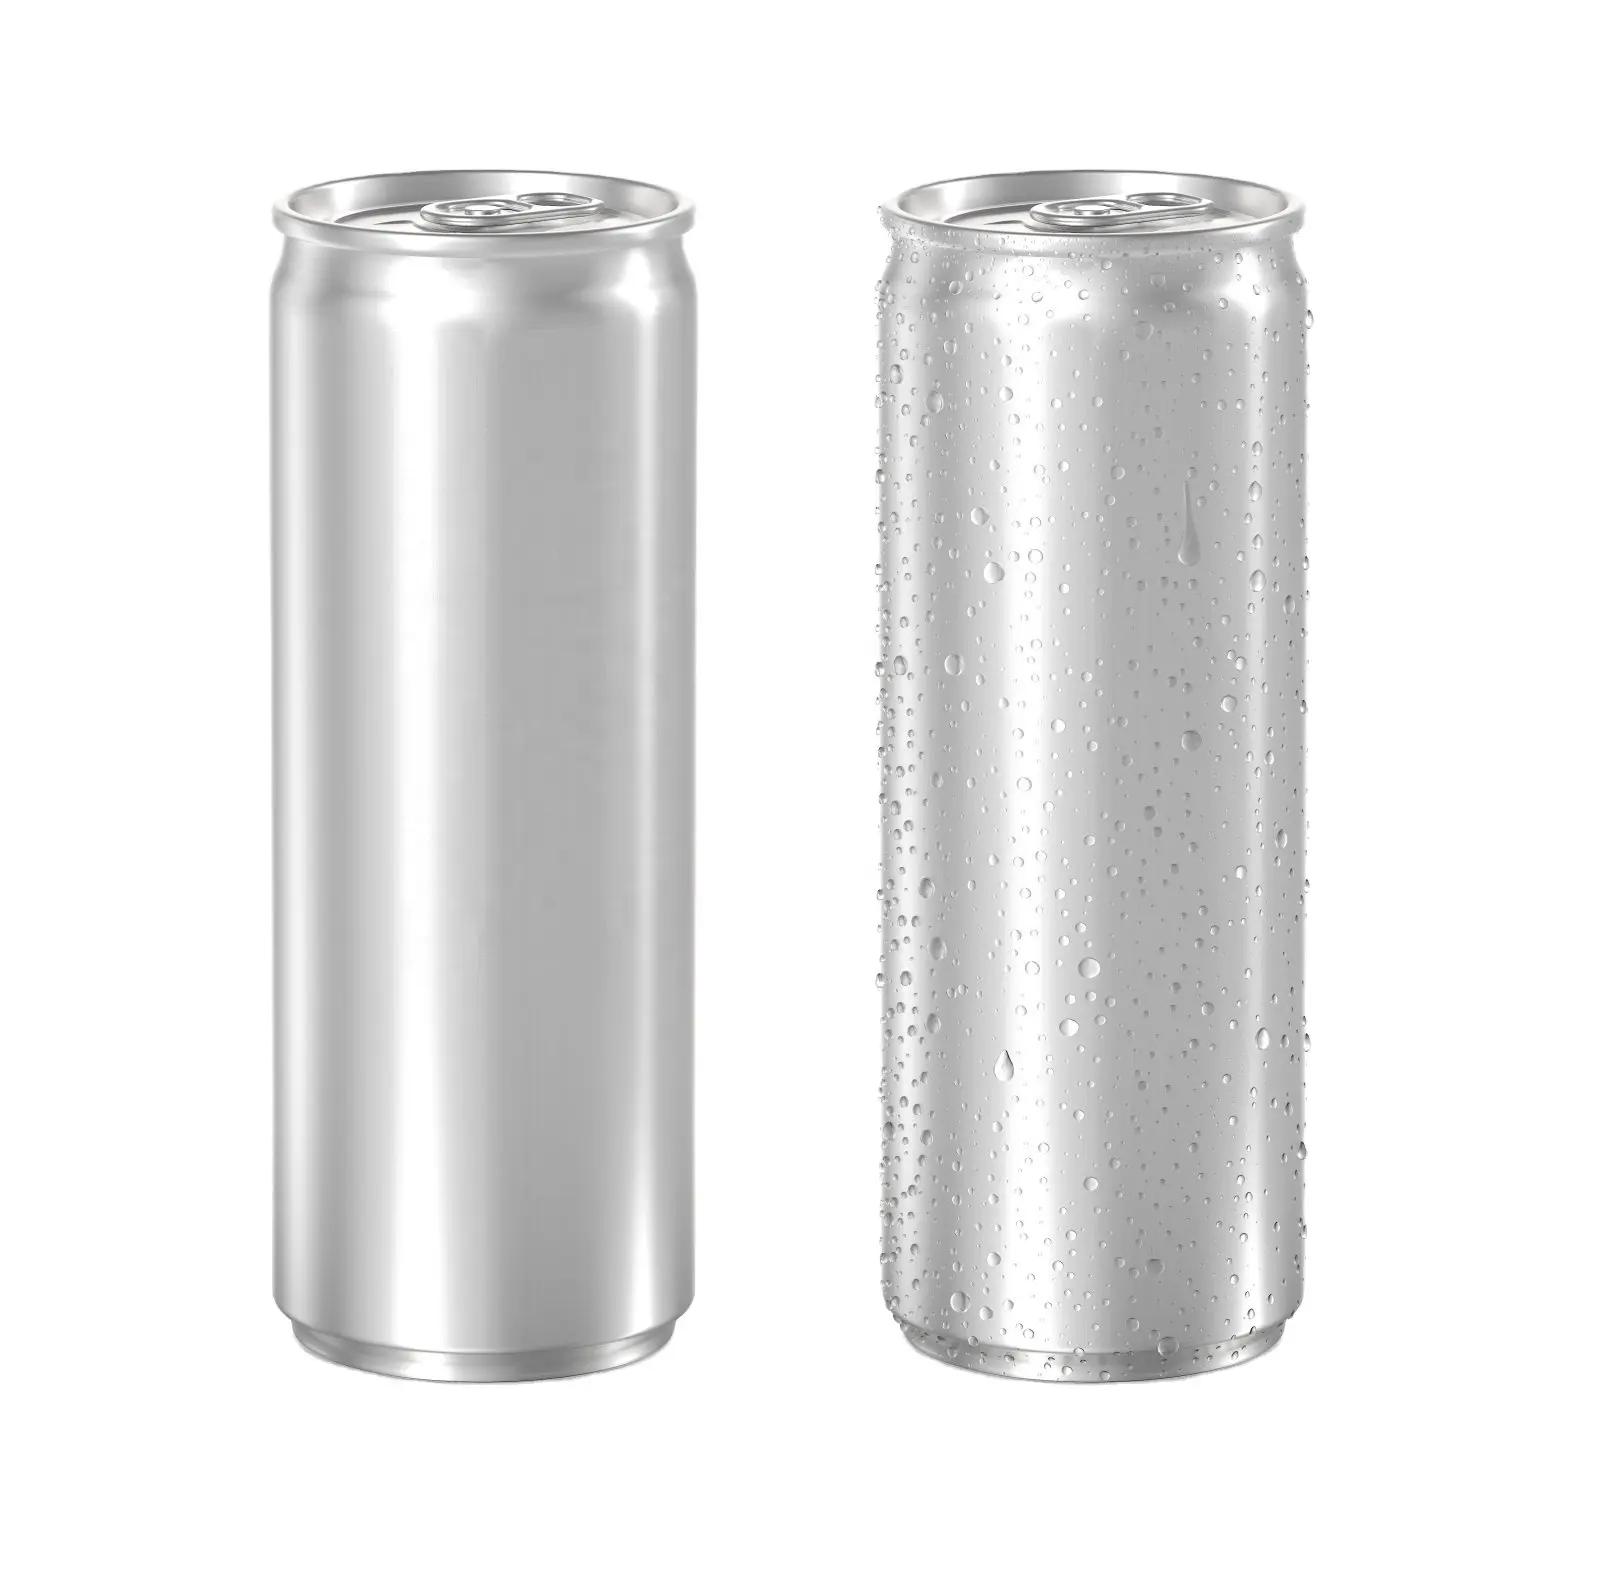 5133 #250 ml leere dünne können, dünne 250ml aluminium dosen, aluminium leicht öffnen können für weiche getränke,